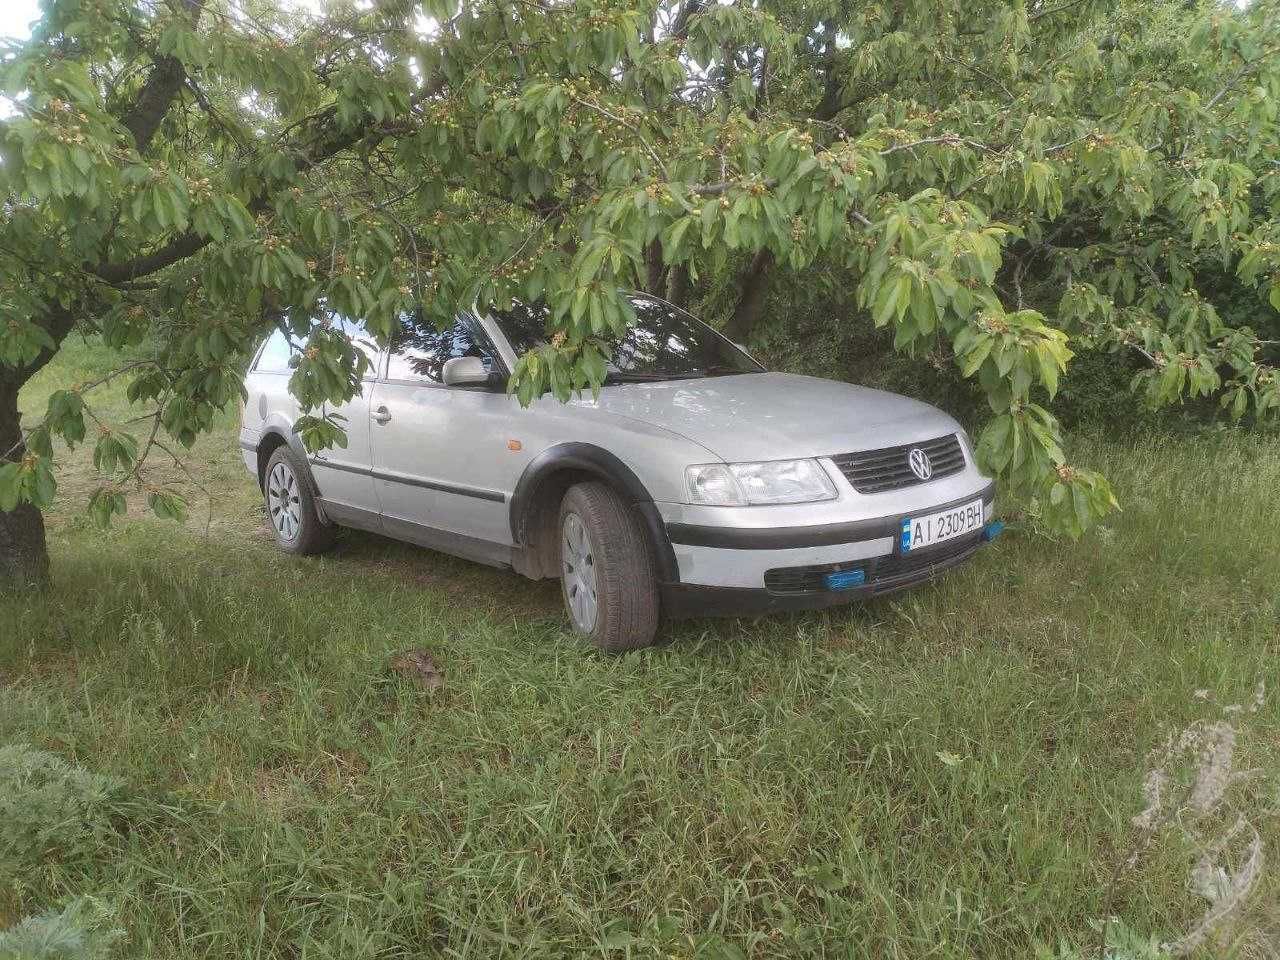 Volkswagen Passat 1998